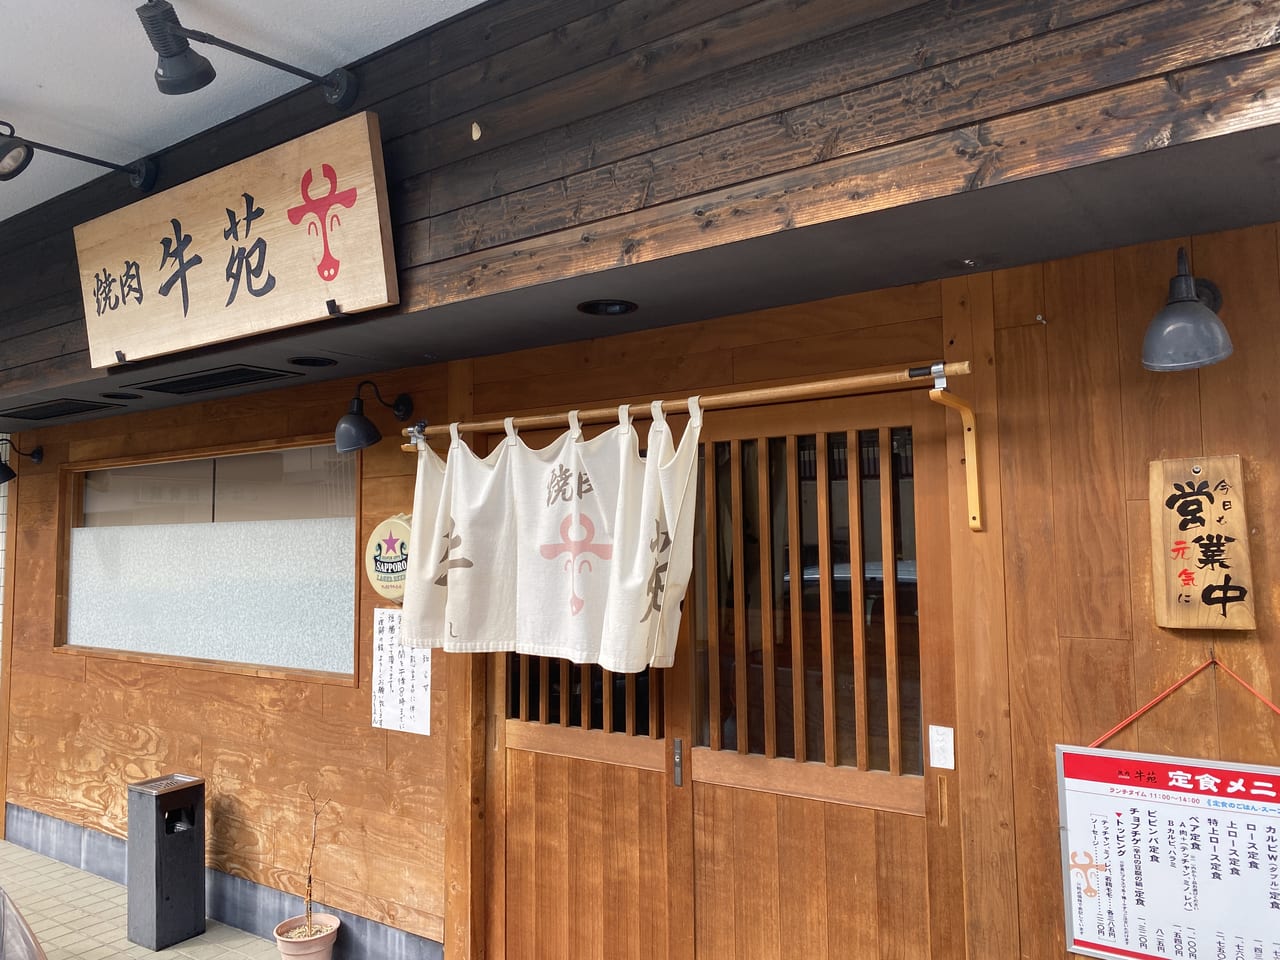 神戸市西区 伊川谷の焼肉屋 牛苑 うしえん の美味しい焼肉ランチを紹介します 号外net 神戸市西区